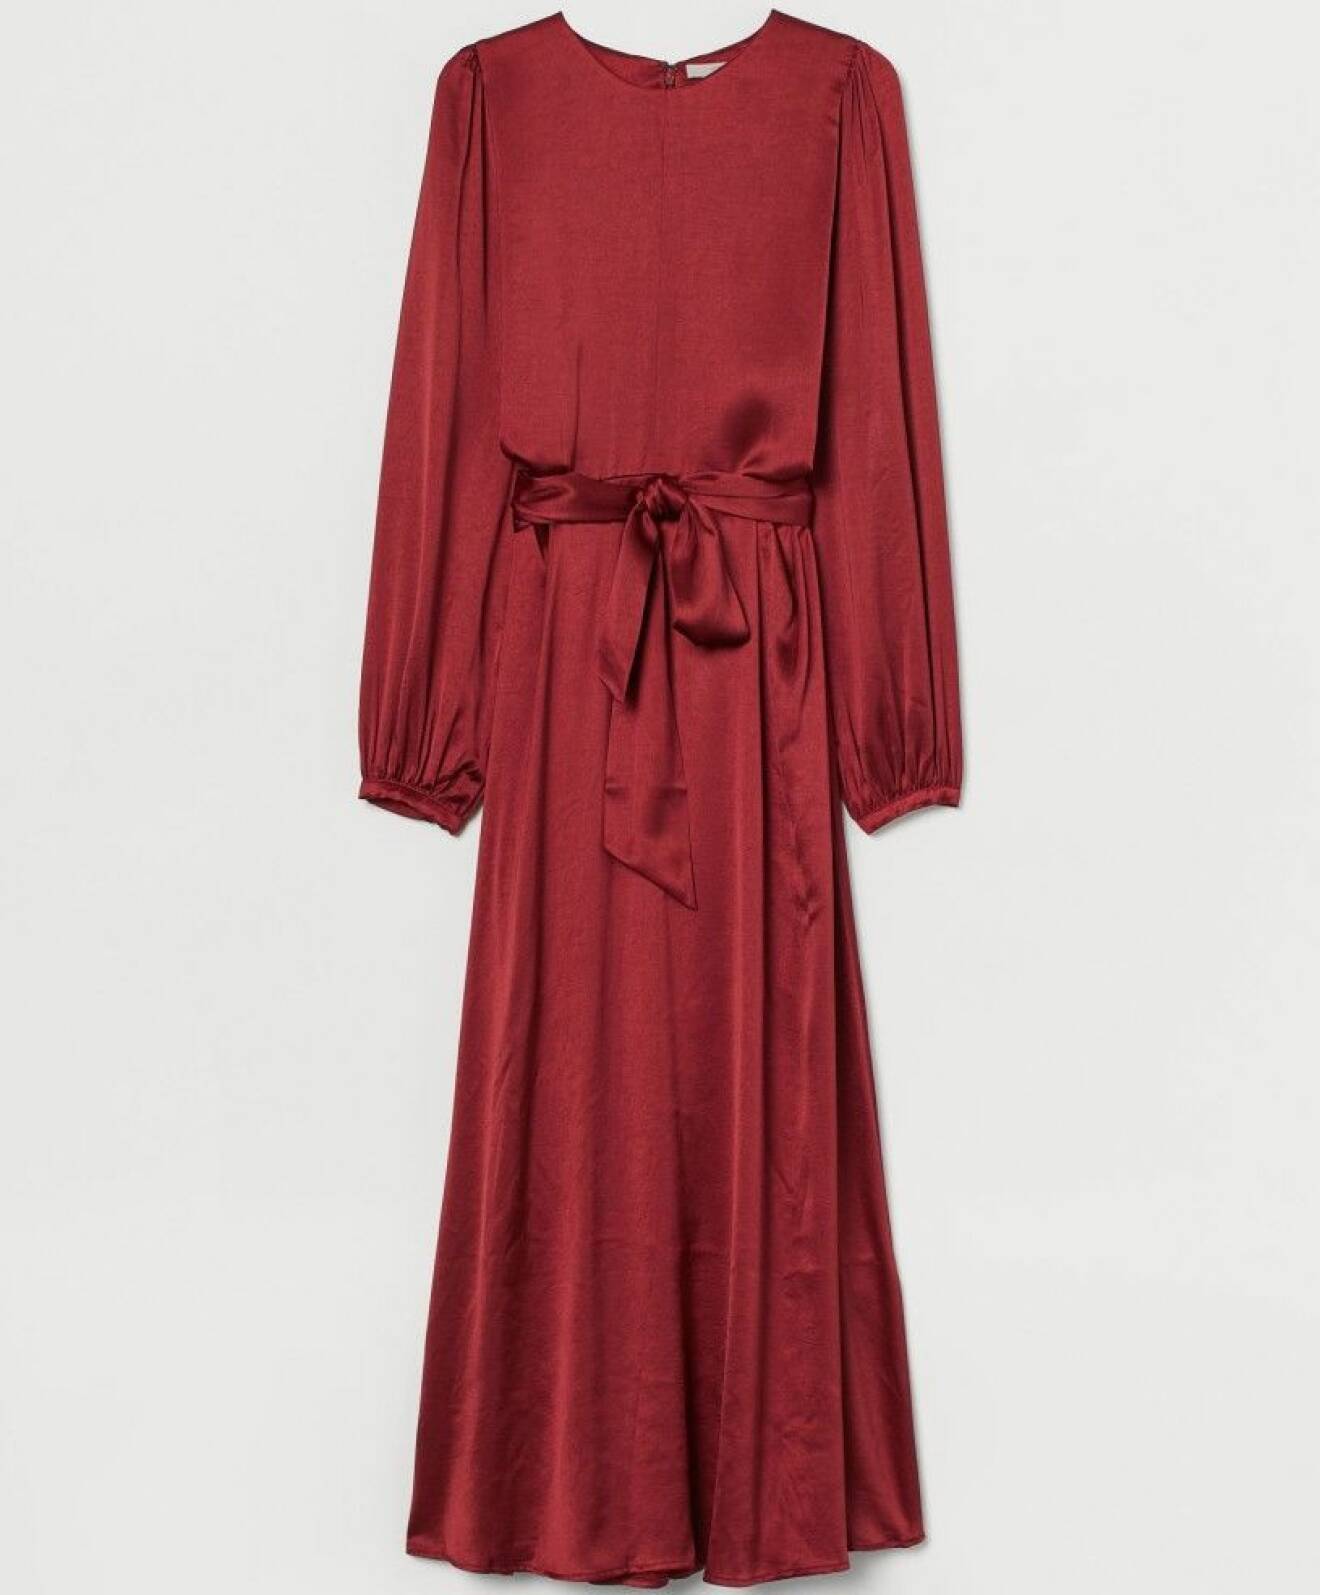 Röd lång klänning med skärp i midjan.